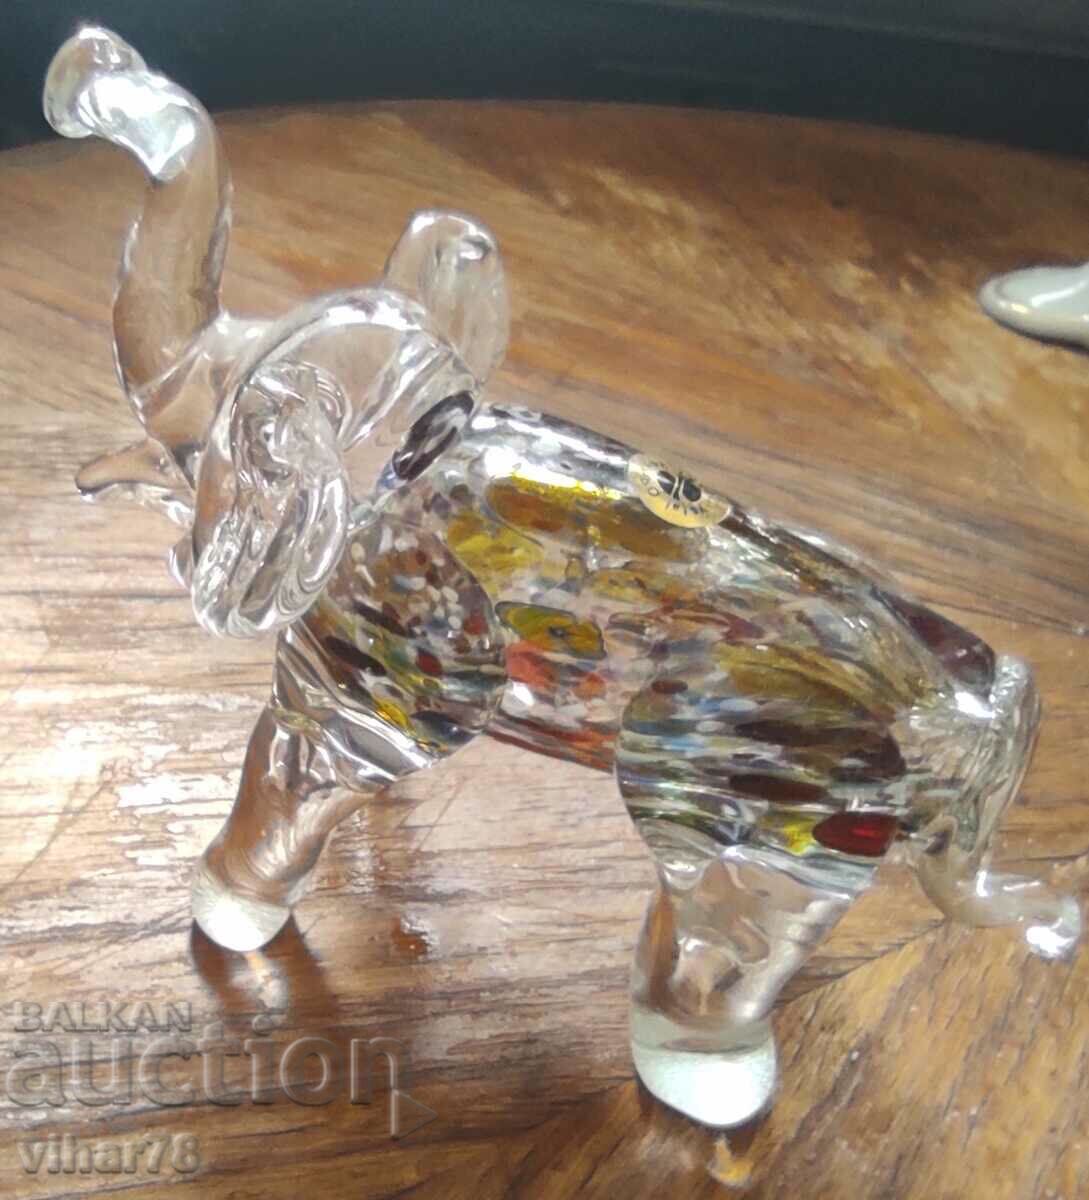 Glass elephant figure